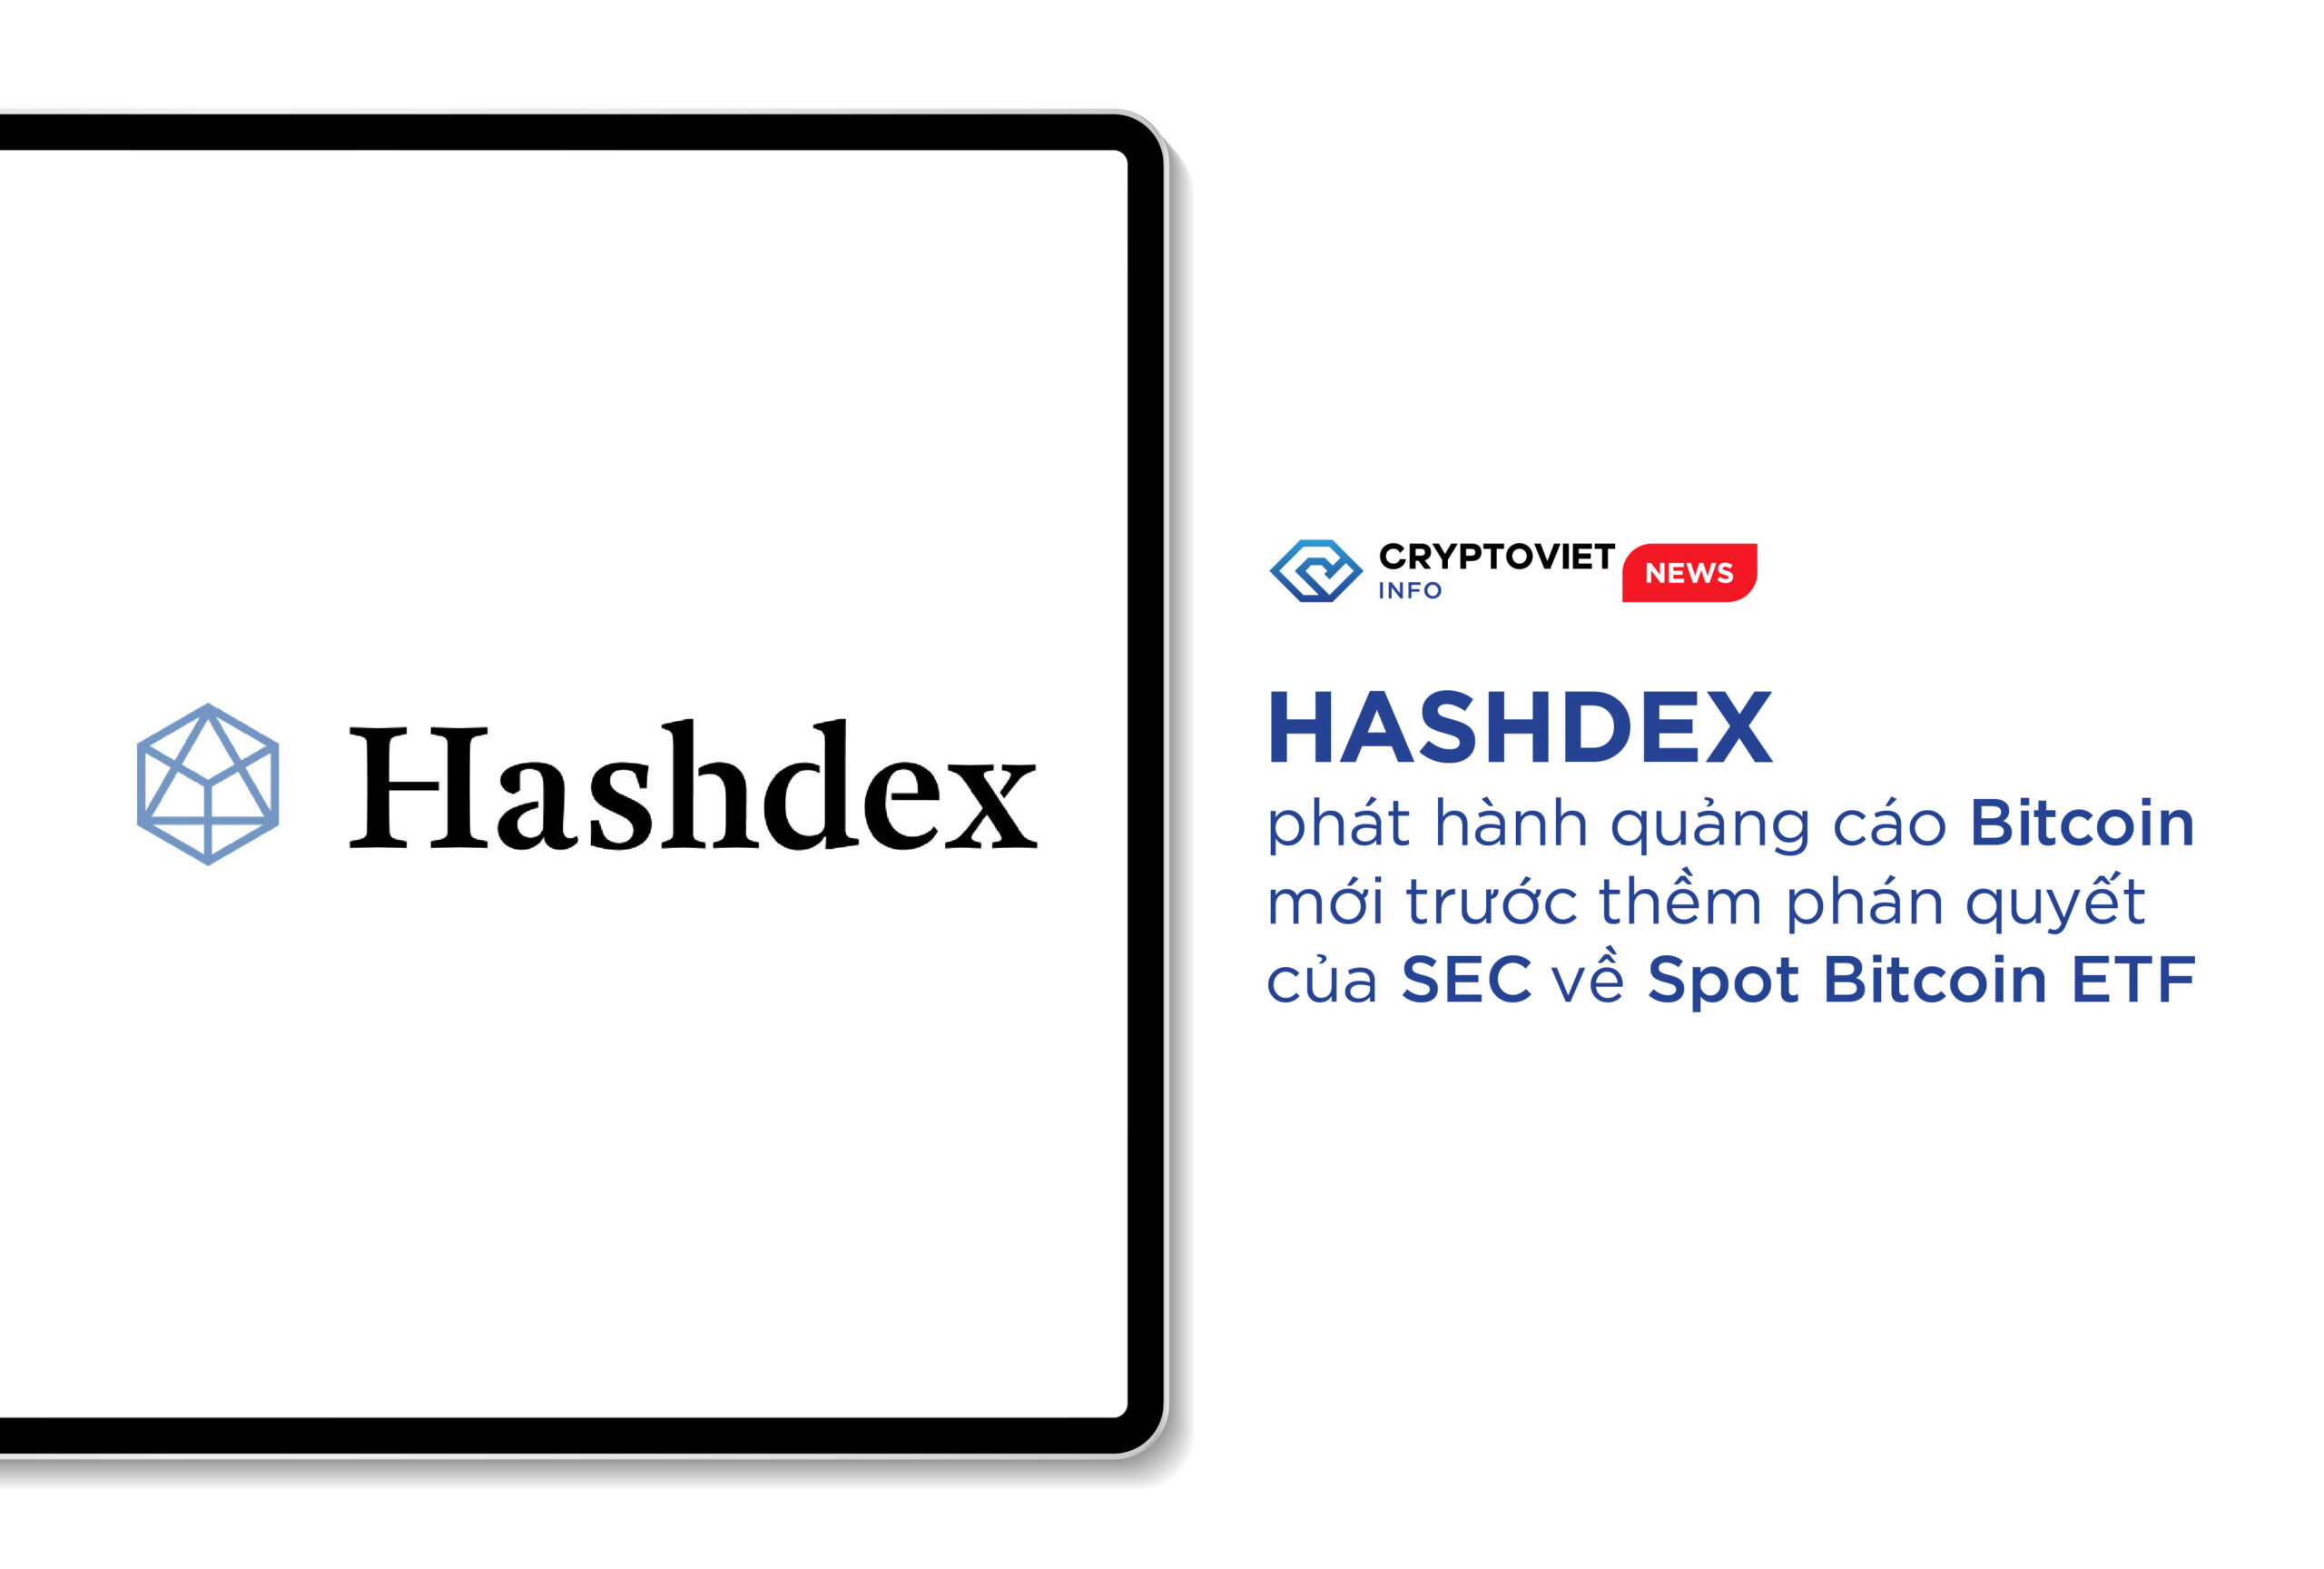 Hashdex phát hành quảng cáo Bitcoin mới trước thềm phán quyết của SEC về Spot Bitcoin ETF